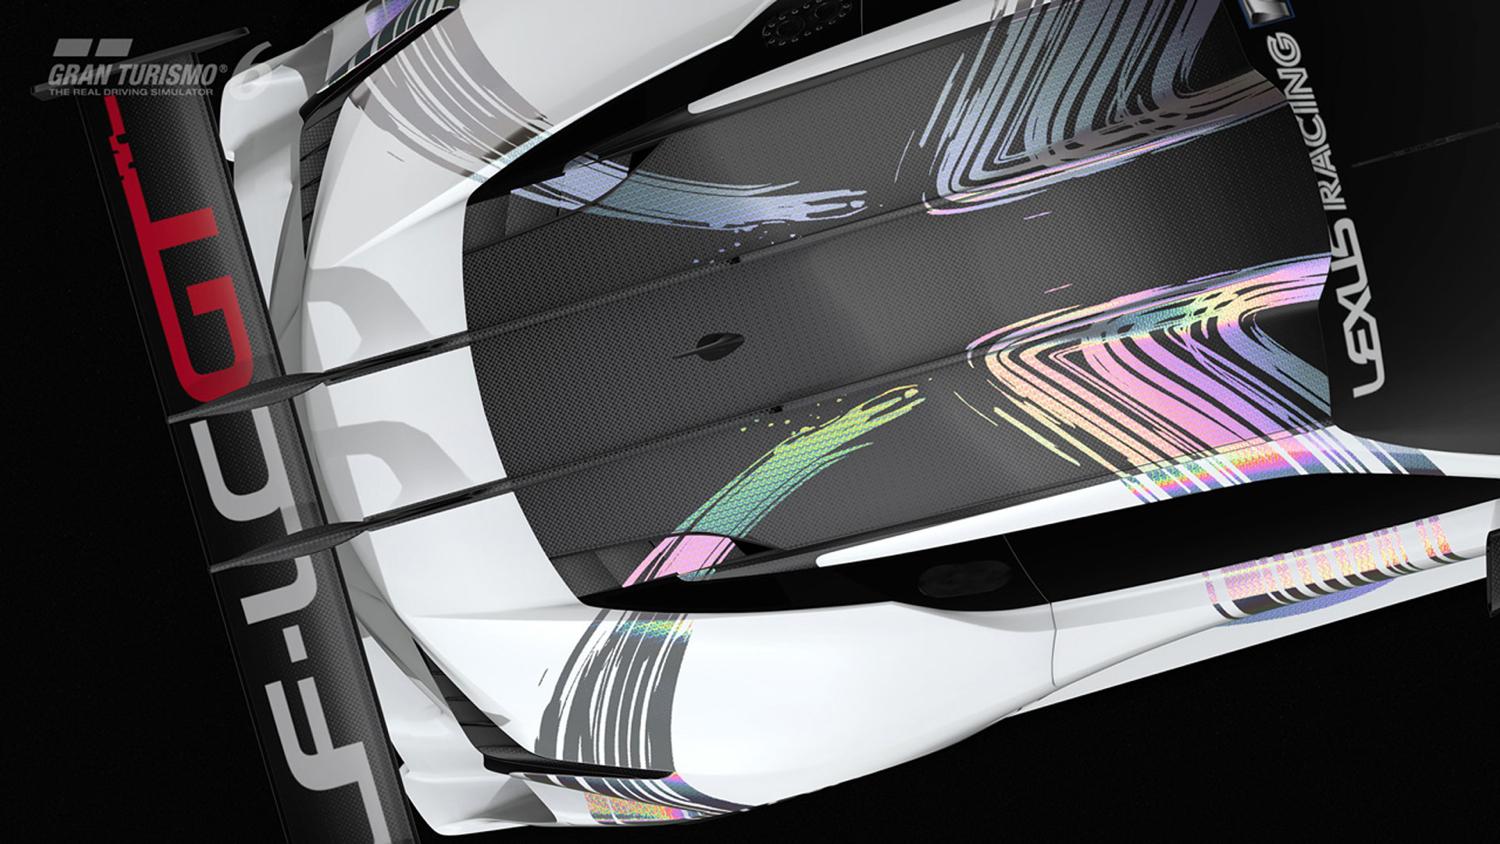 Lexus LF-LC Vision Gran Turismo concept